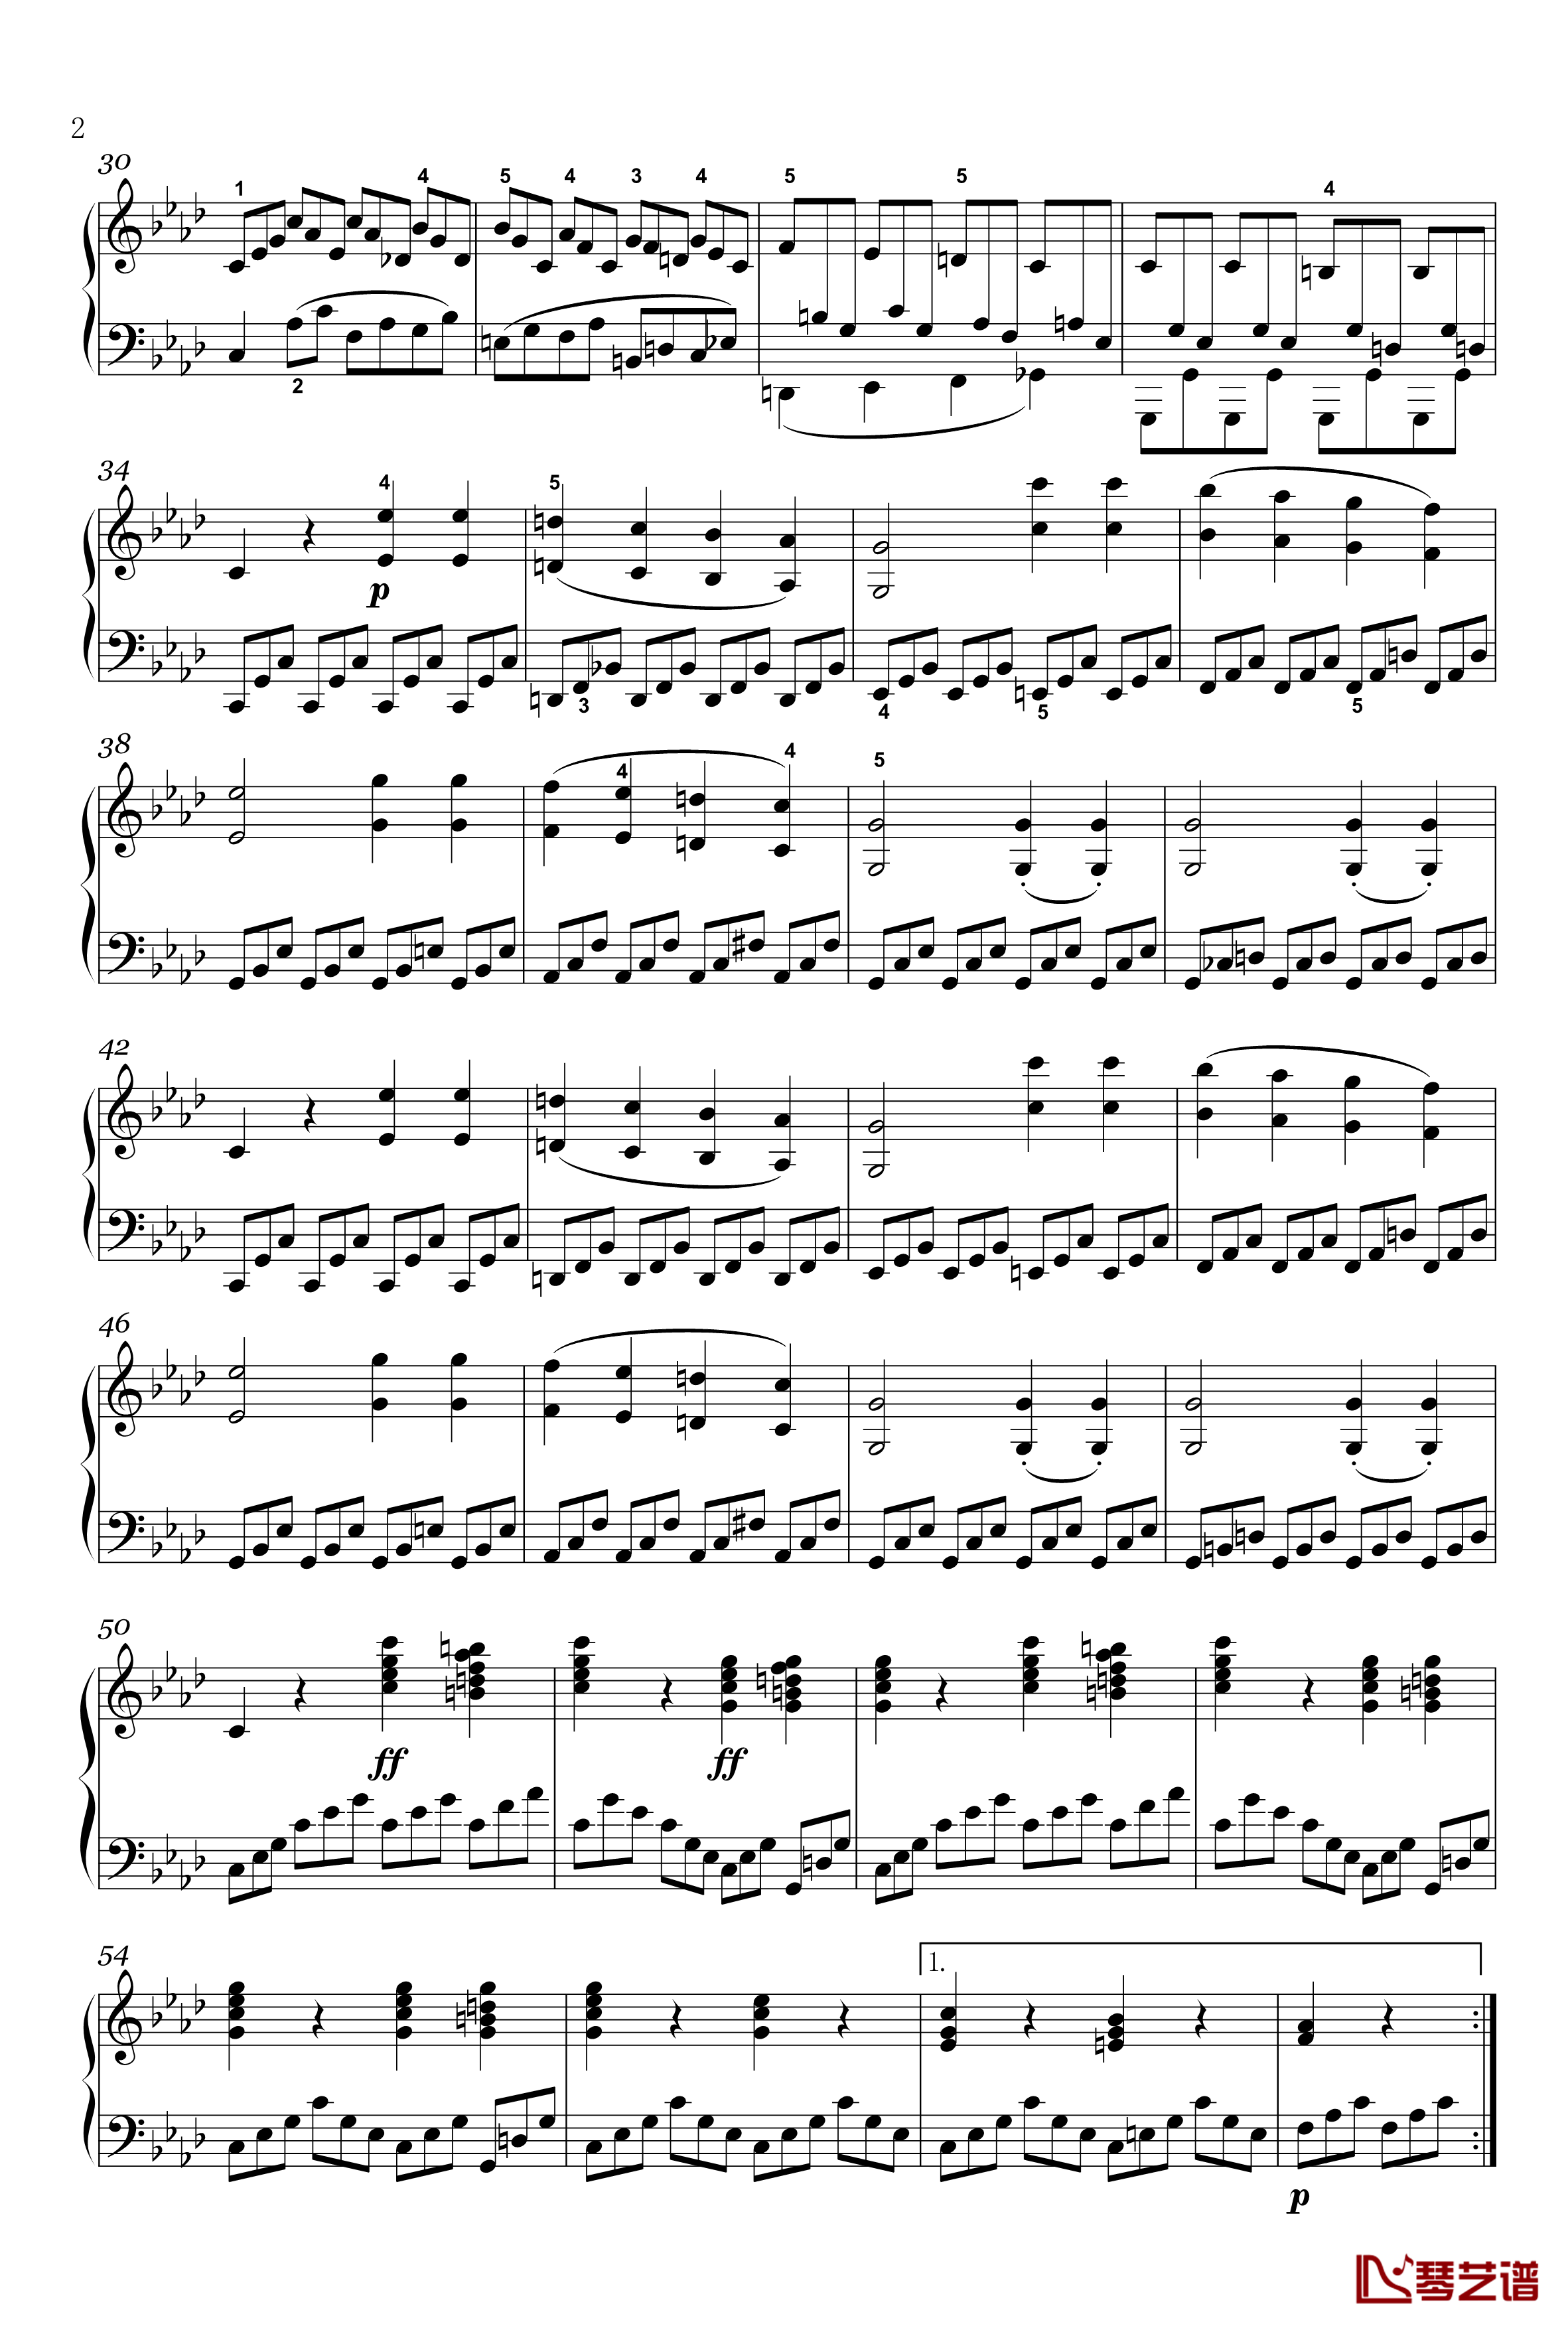 奏鸣曲钢琴谱-op-2-1-第四乐章-贝多芬-beethoven2